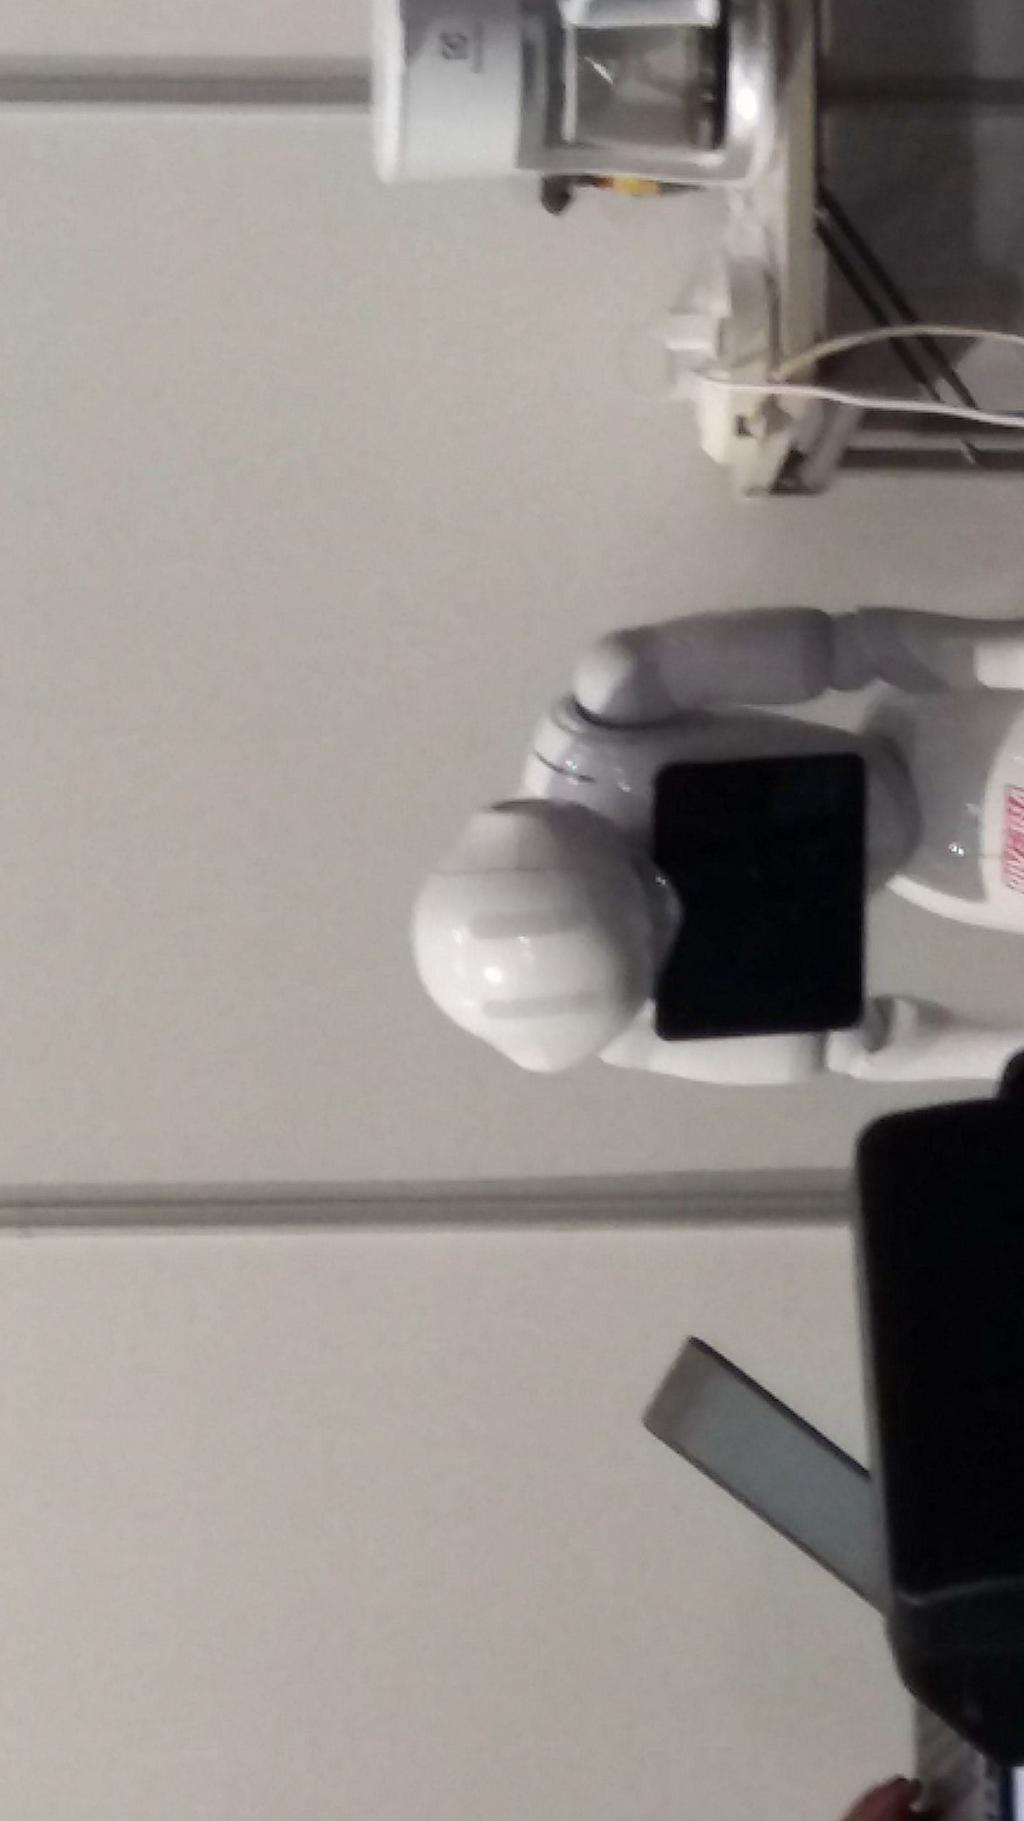 Humanoidirobotti Pepper Tavoitteena oli tutustua humanoidirobottiin, joka olisi vastannut tyypillisiin alaa koskeviin kysymyksiin